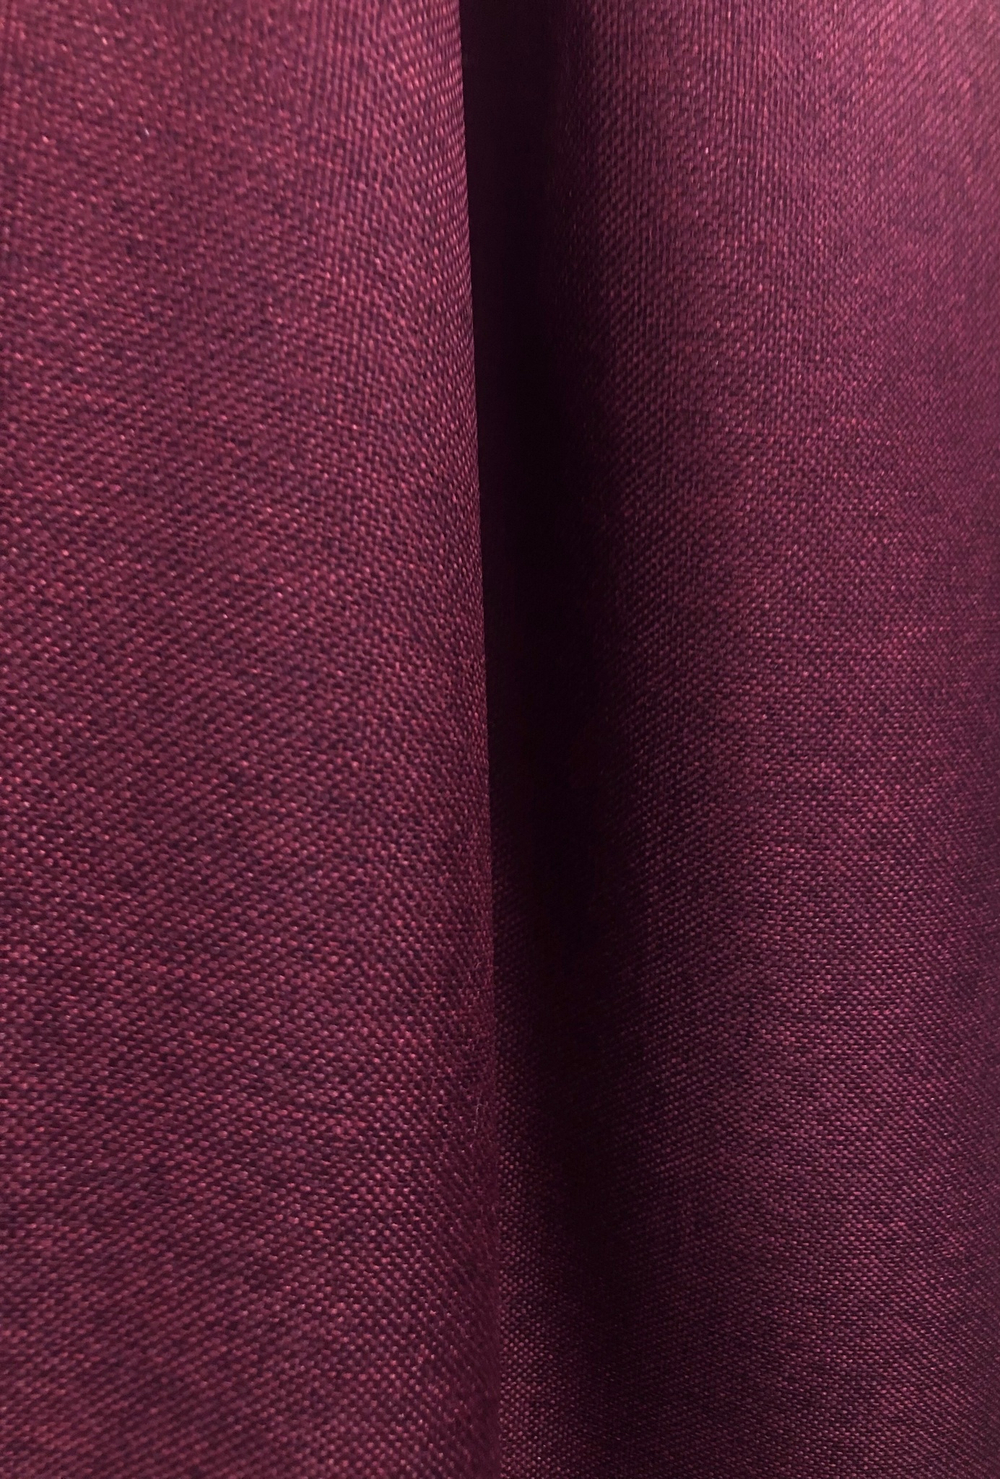 Ткань портьерная Блэкаут-лен, цвет вишневый, артикул 327742